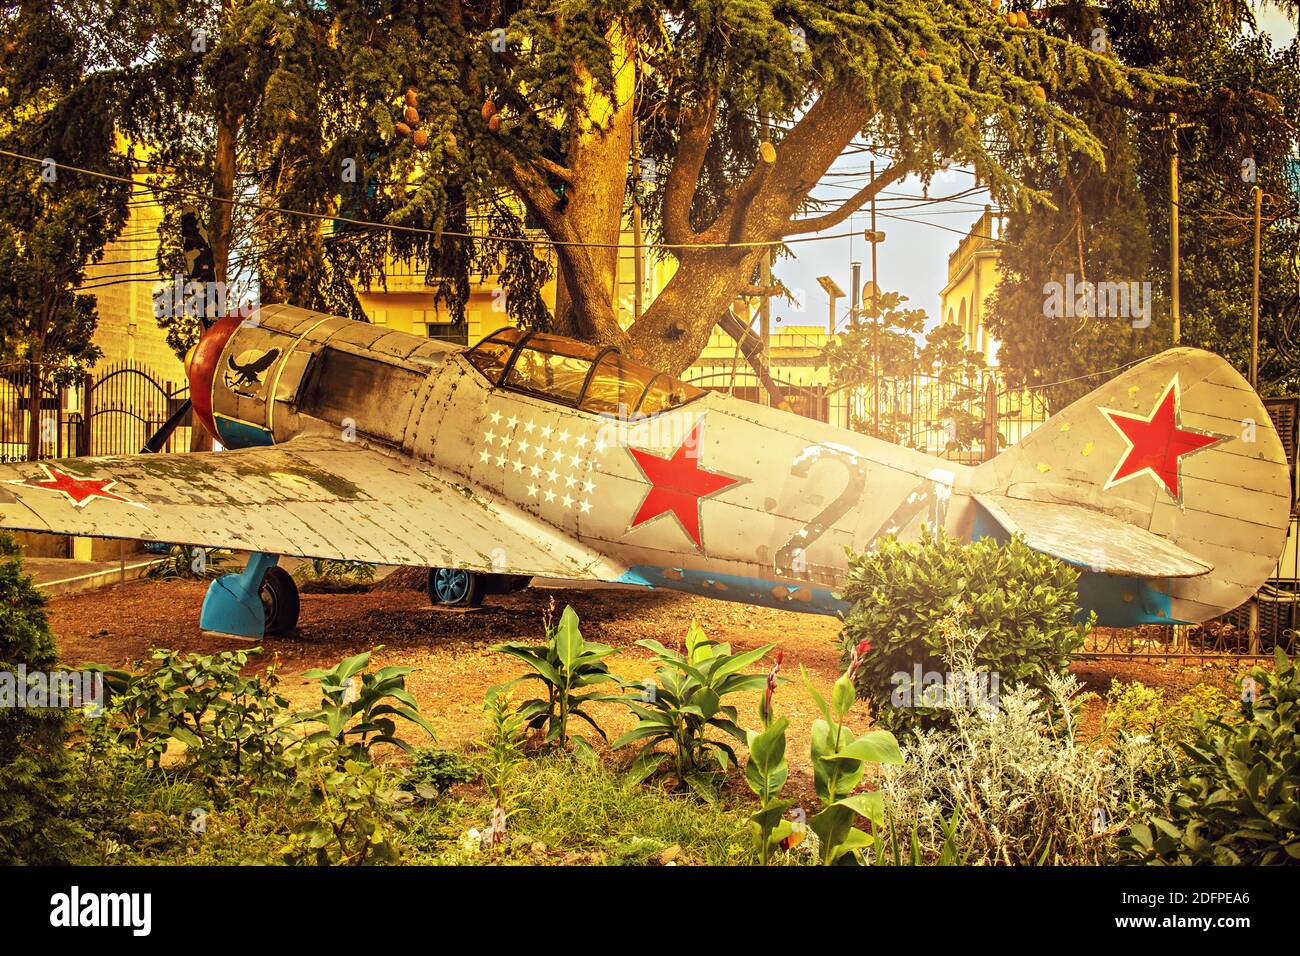 L'ancien avion militaire s'est écrasé dans la jungle. Banque D'Images